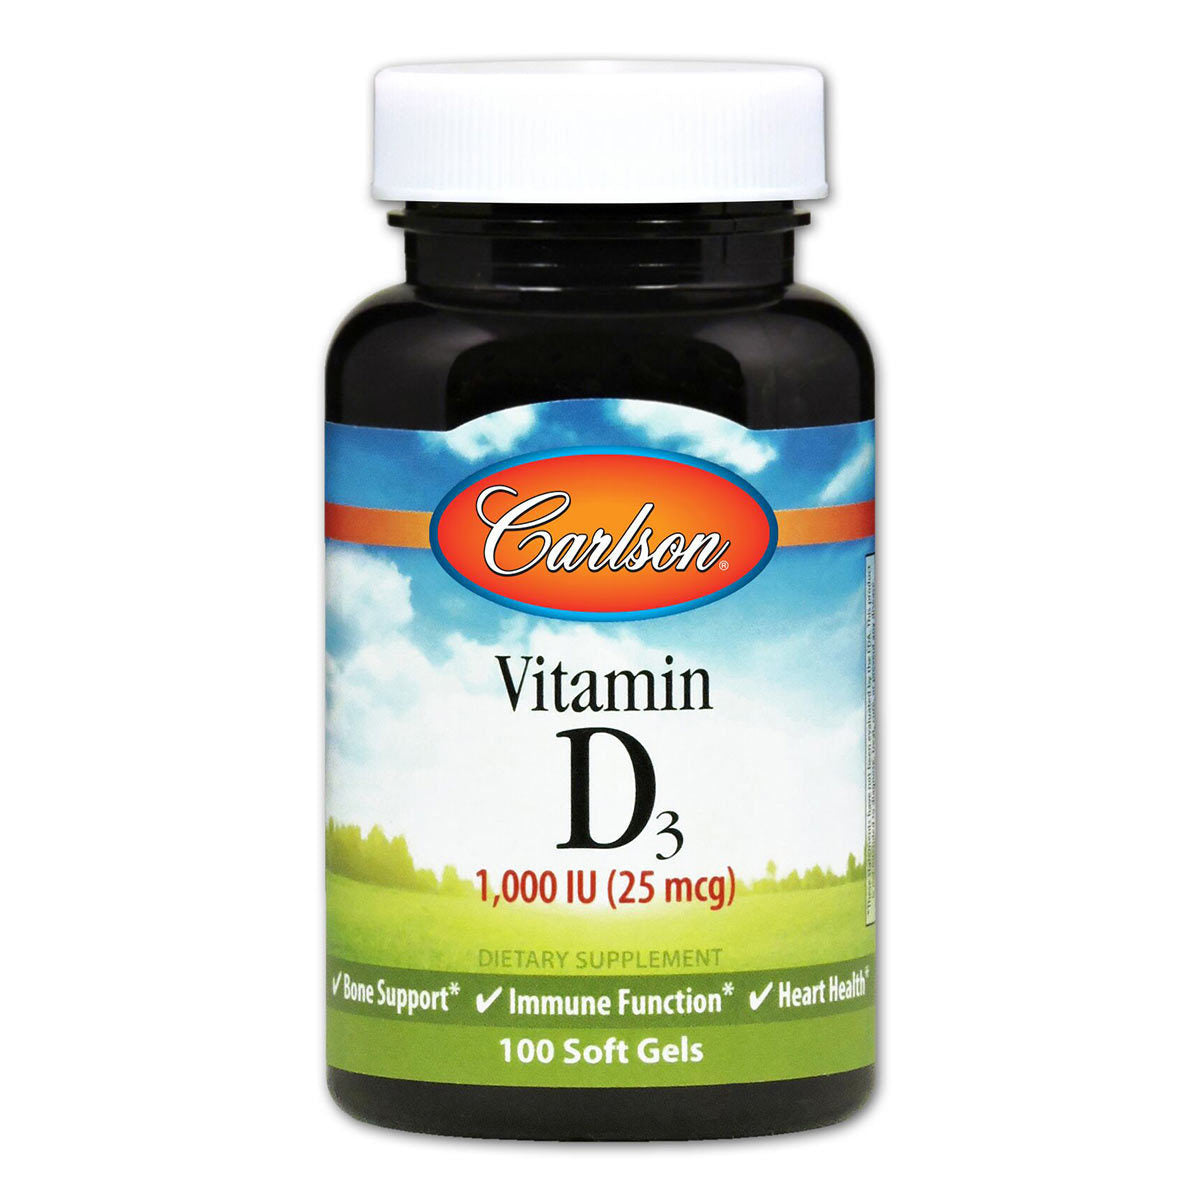 Primary image of Vitamin D3 1,000IU